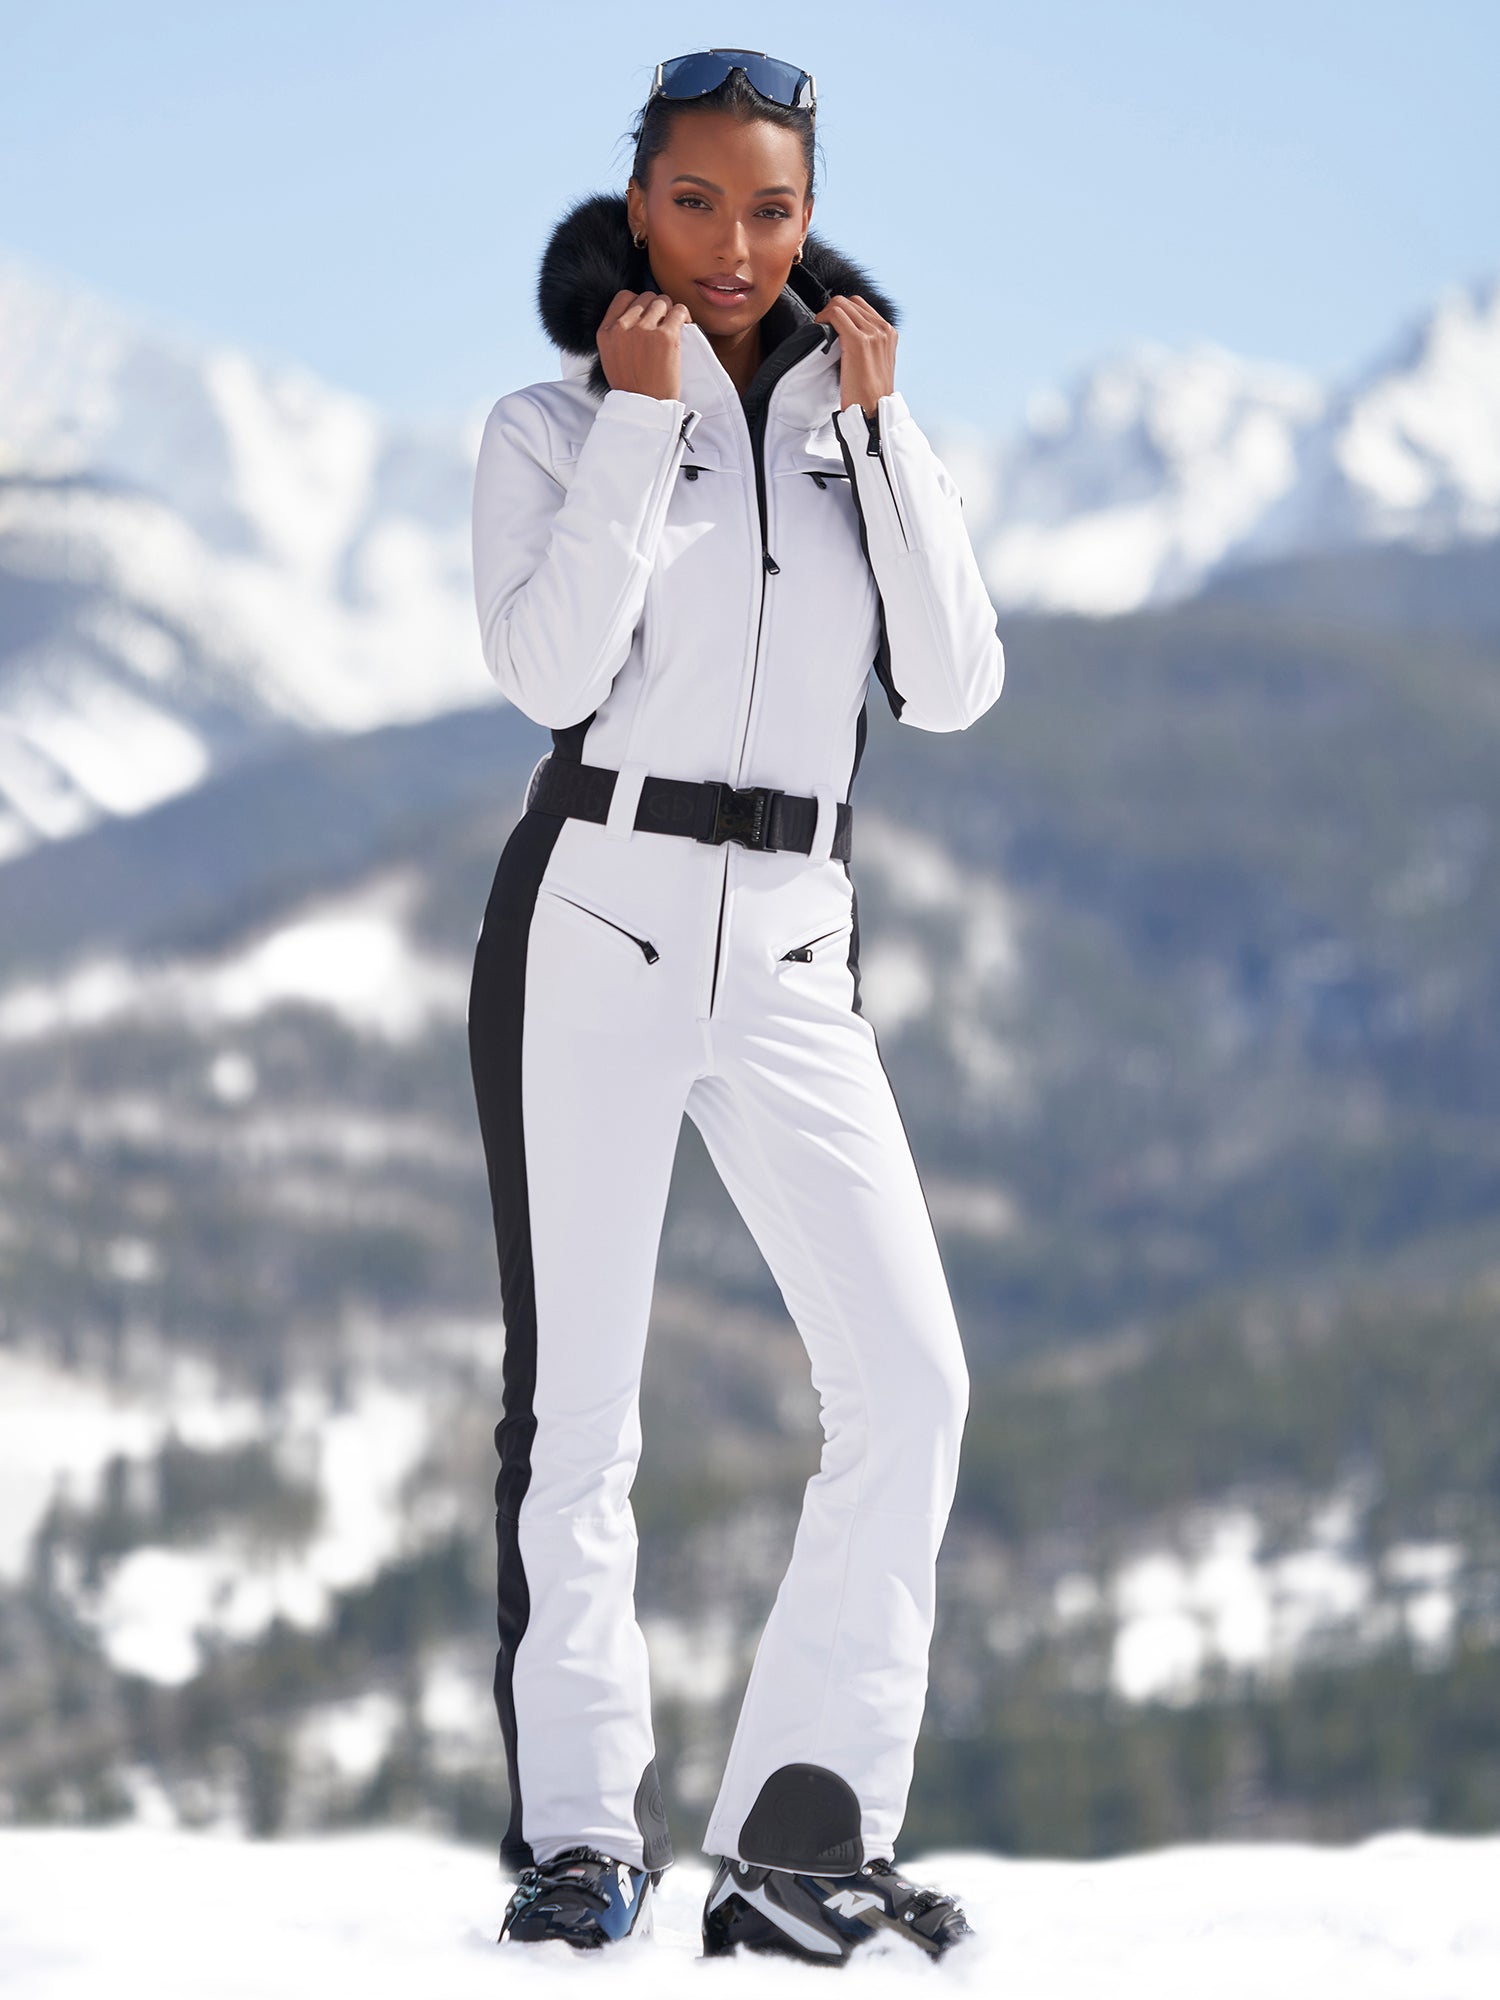 9 Best White ski outfit ideas  ski outfit, white ski outfit